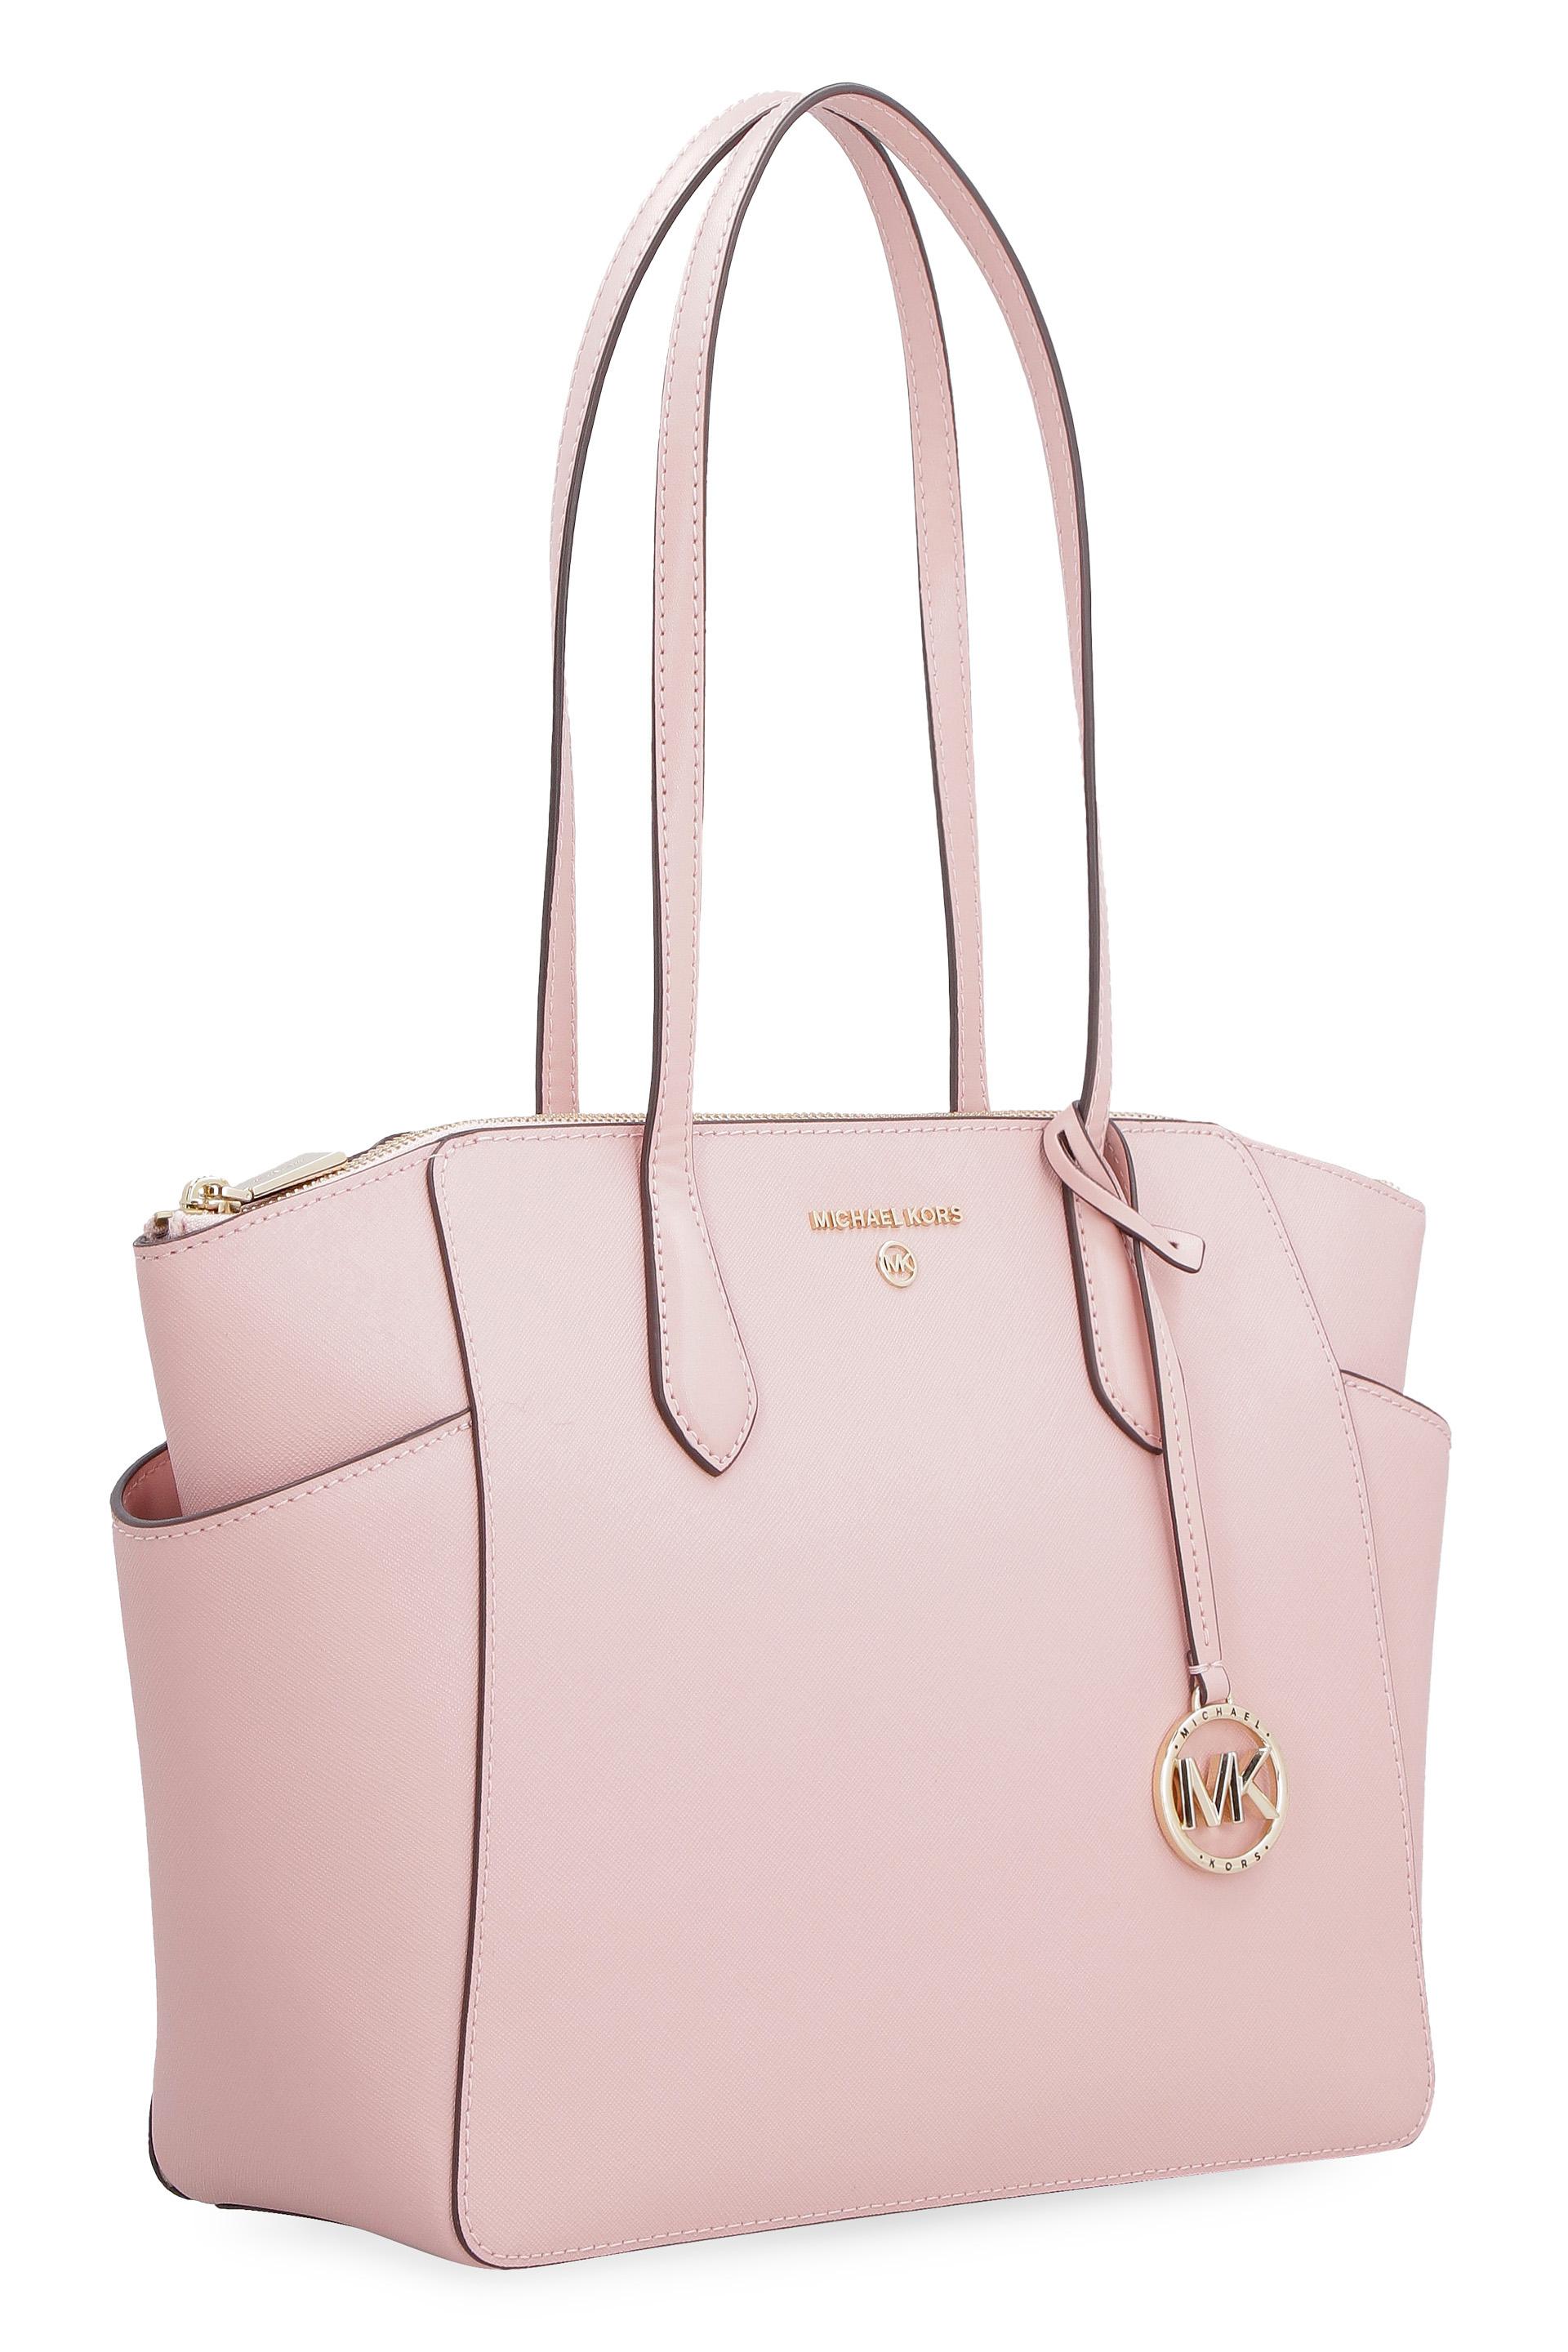 MICHAEL Michael Kors Women's Pink Medium Marilyn Tote Bag